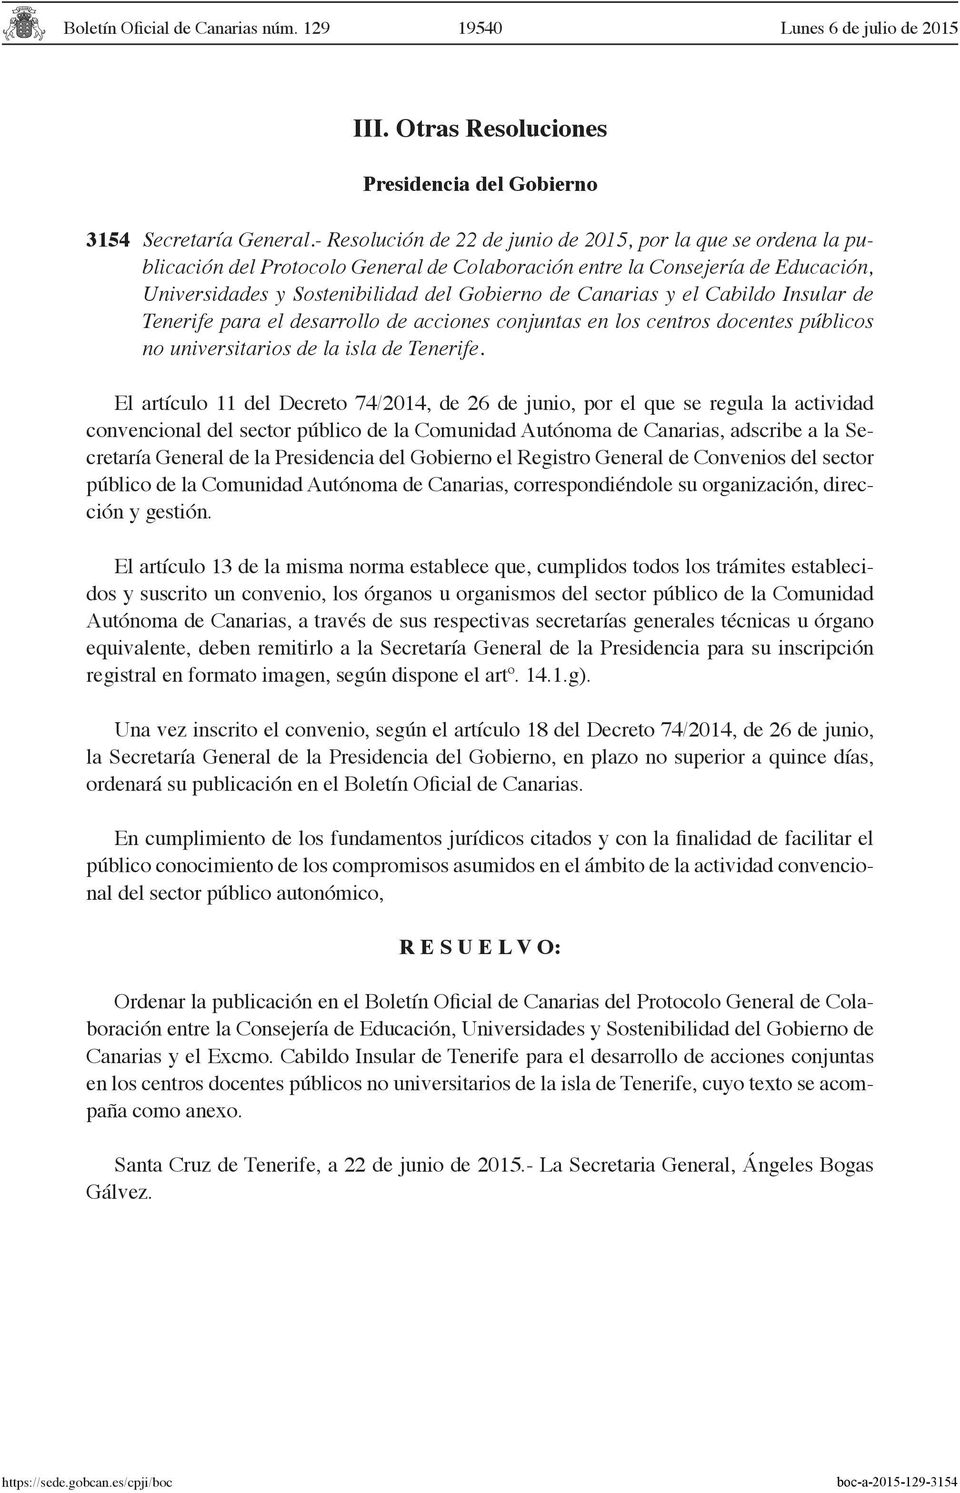 Canarias y el Cabildo Insular de Tenerife para el desarrollo de acciones conjuntas en los centros docentes públicos no universitarios de la isla de Tenerife.